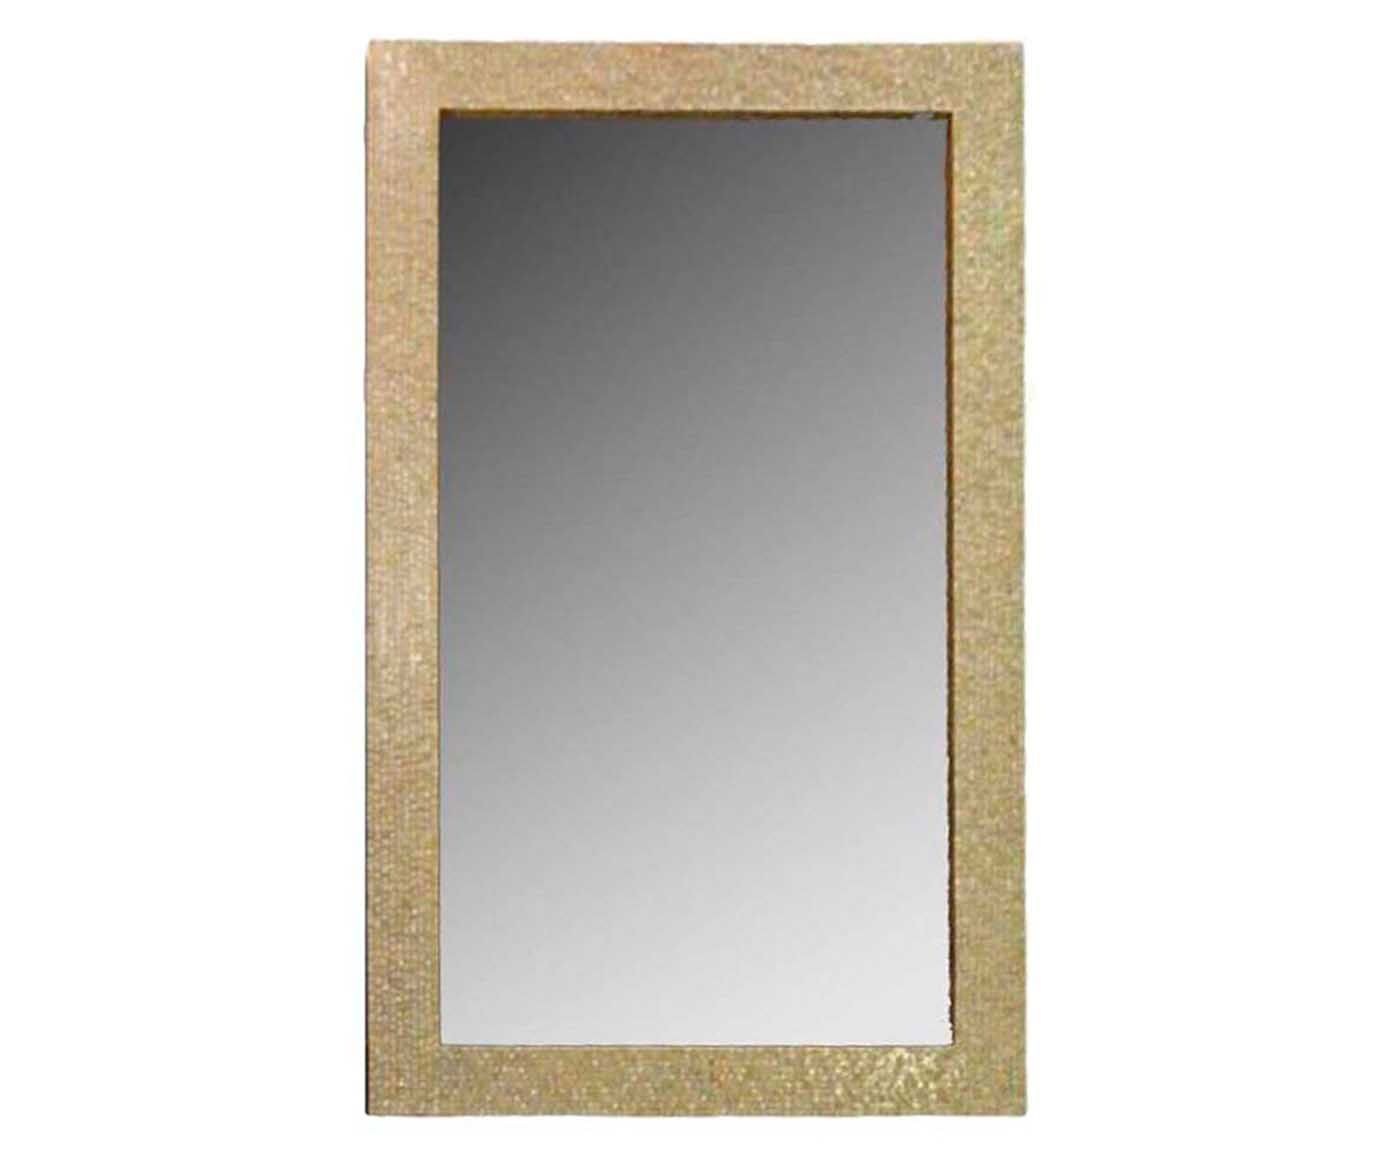 Moldura para espelho gram elegance | Westwing.com.br